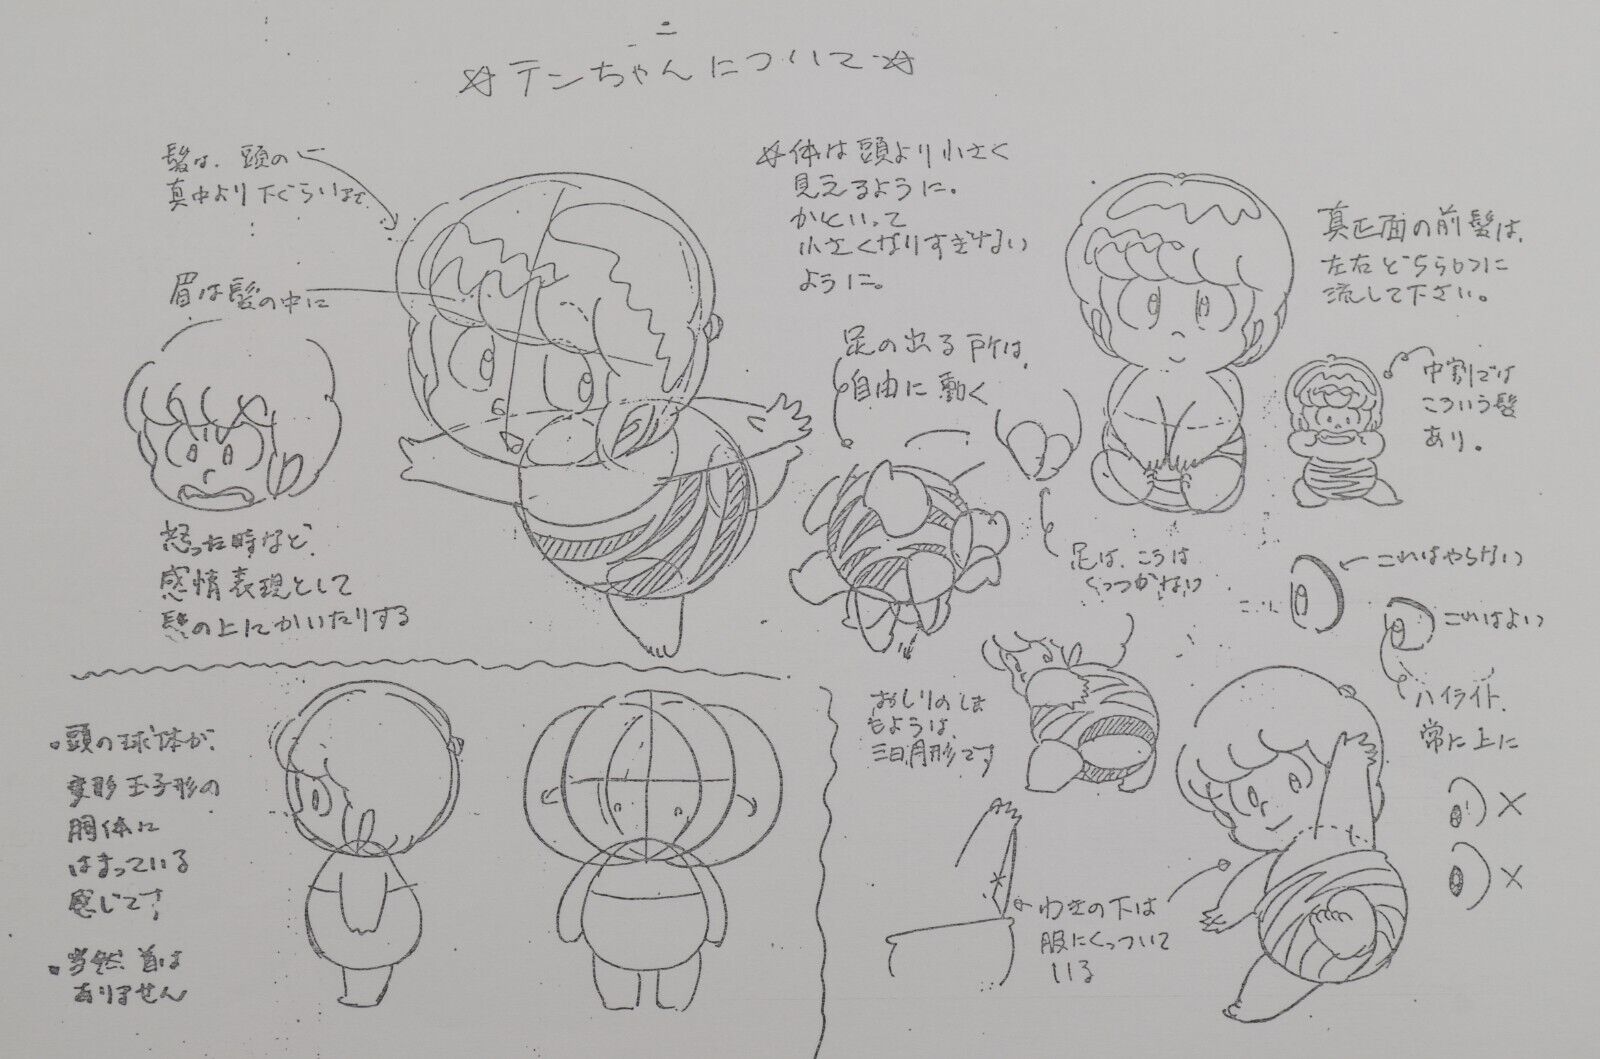 Original Urusei Yatsura Ten Chan Anime Production Setting Notes COPY